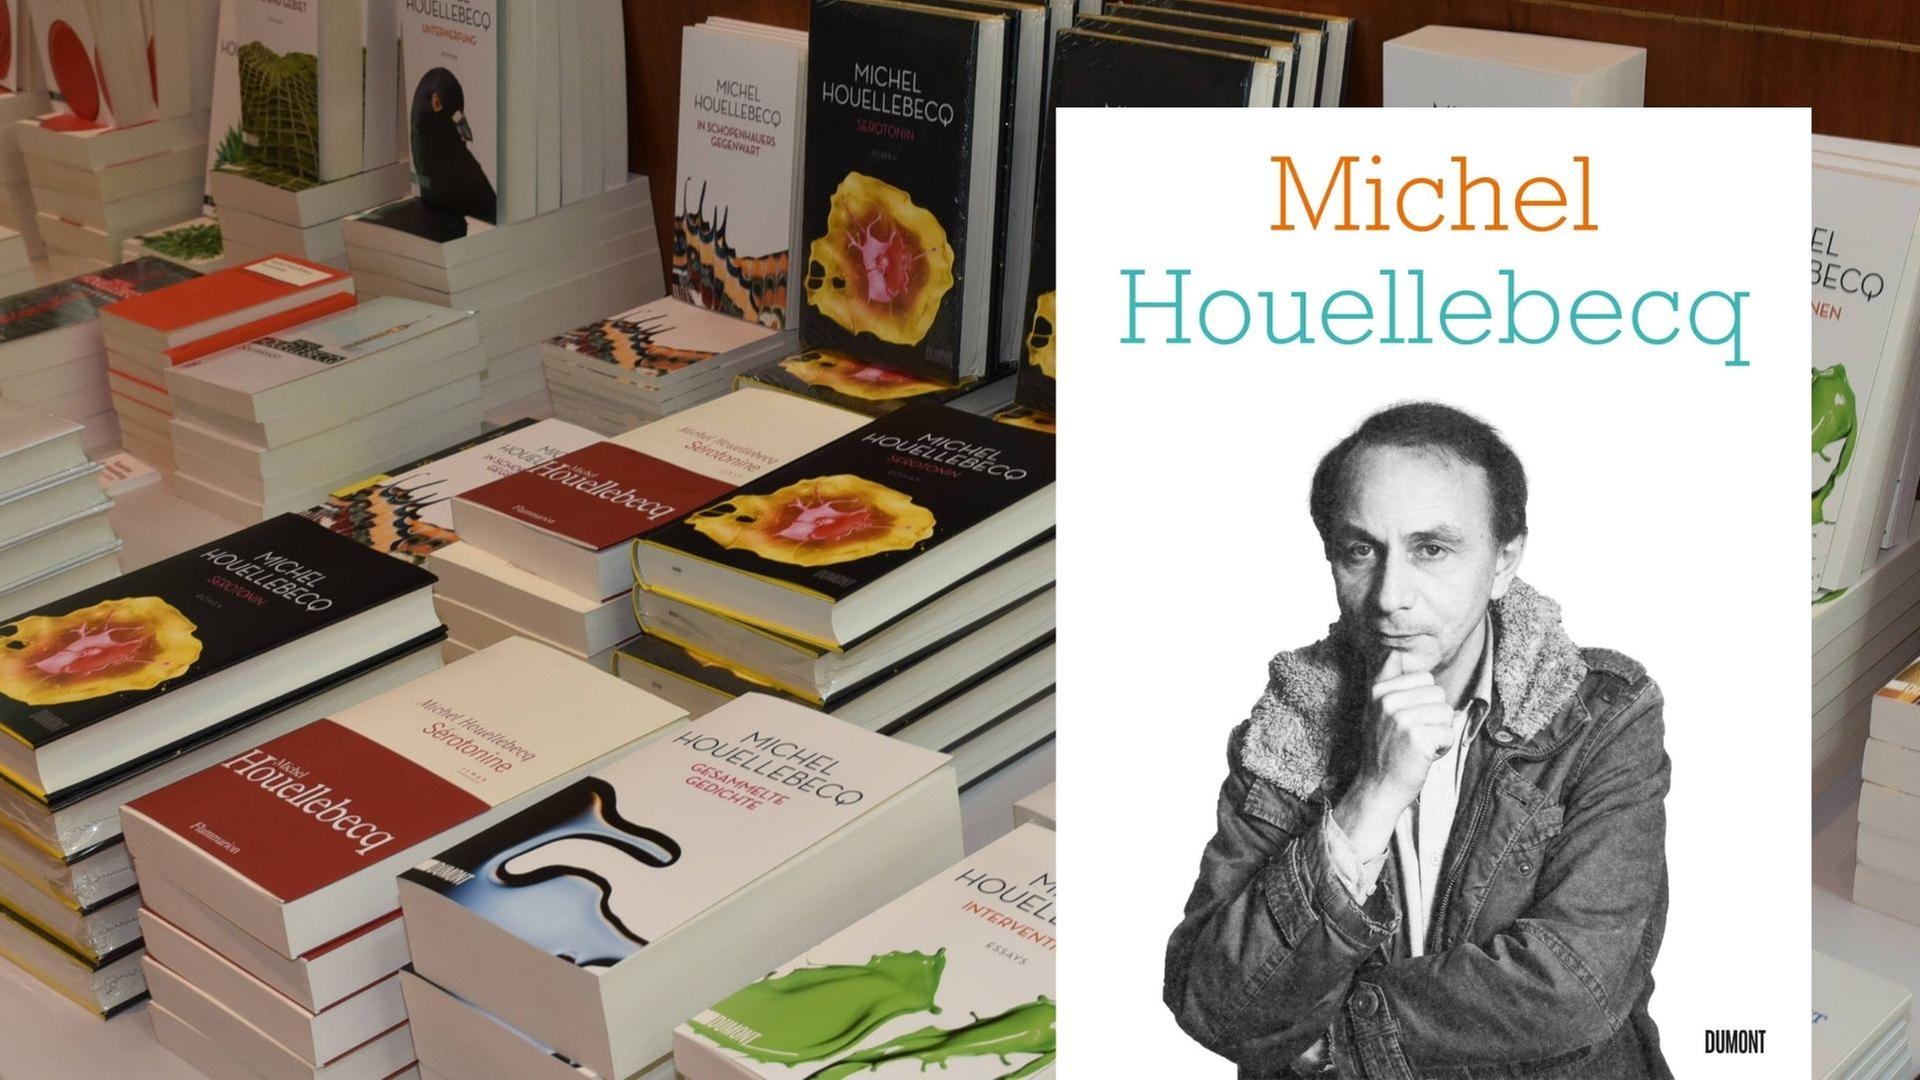 Der Sammelband „Michel Houellebecq“ von Agathe Novak-Lechevalier vor einem Stapel Houellebecq-Bücher